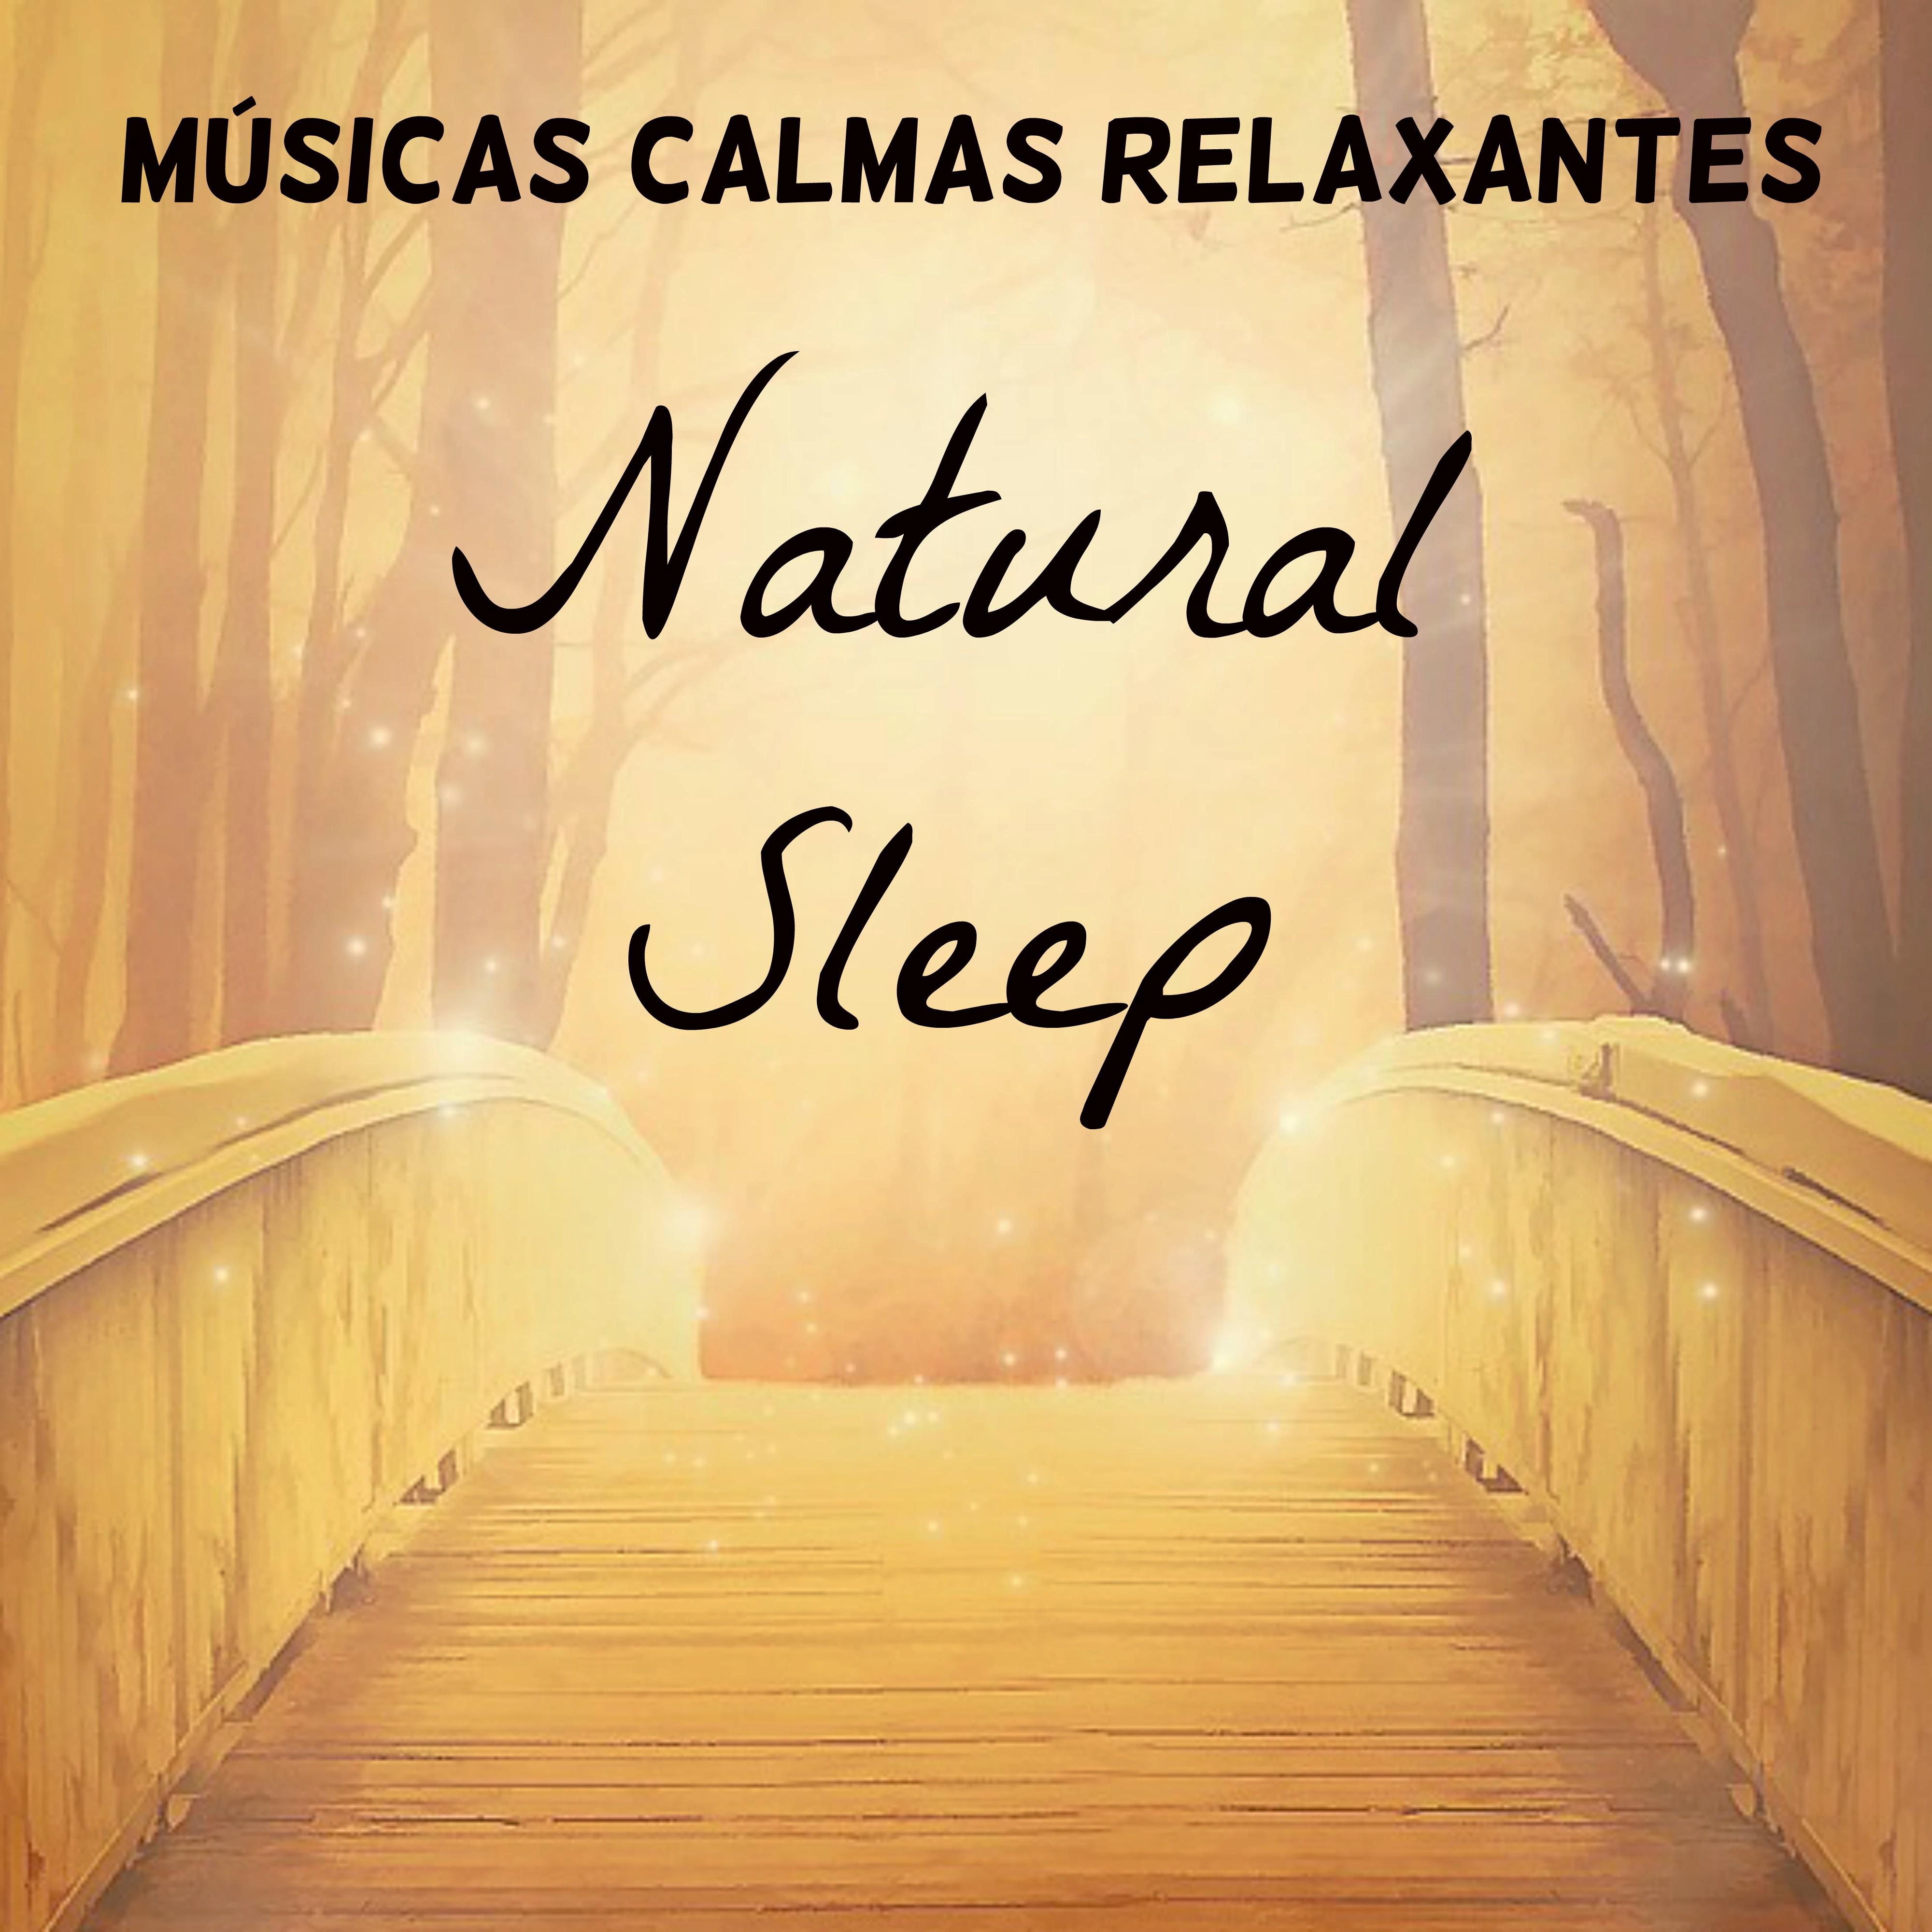 Natural Sleep - Músicas Calmas Relaxantes para Retiro Meditação Chakras do Corpo Tratamento Espiritual com Sons Naturais Instrumentais New Age